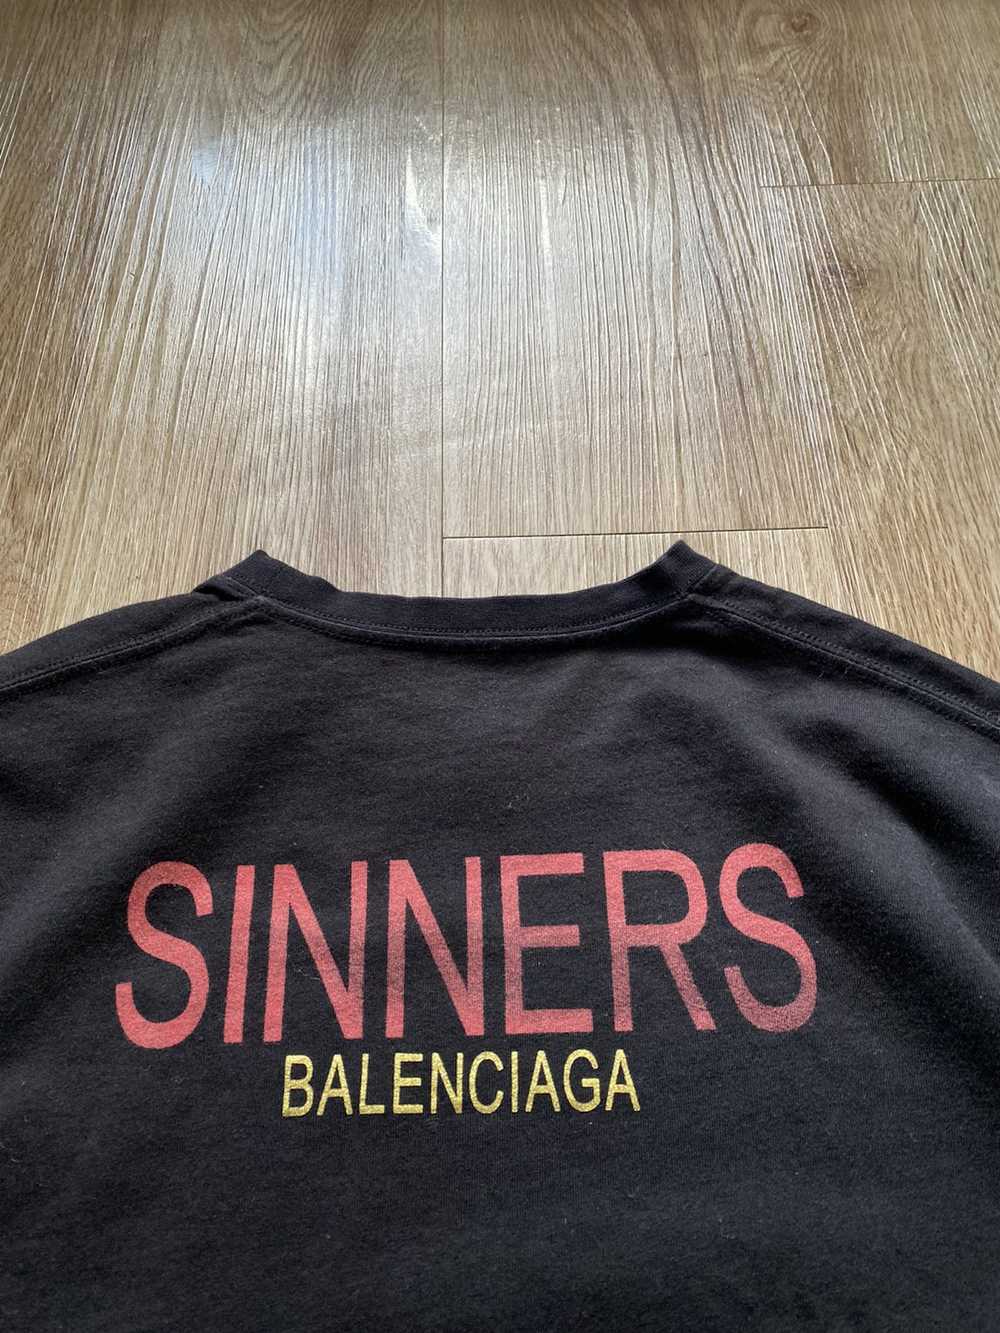 Balenciaga BALENCIAGA SS18 SINNERS TEE - image 7